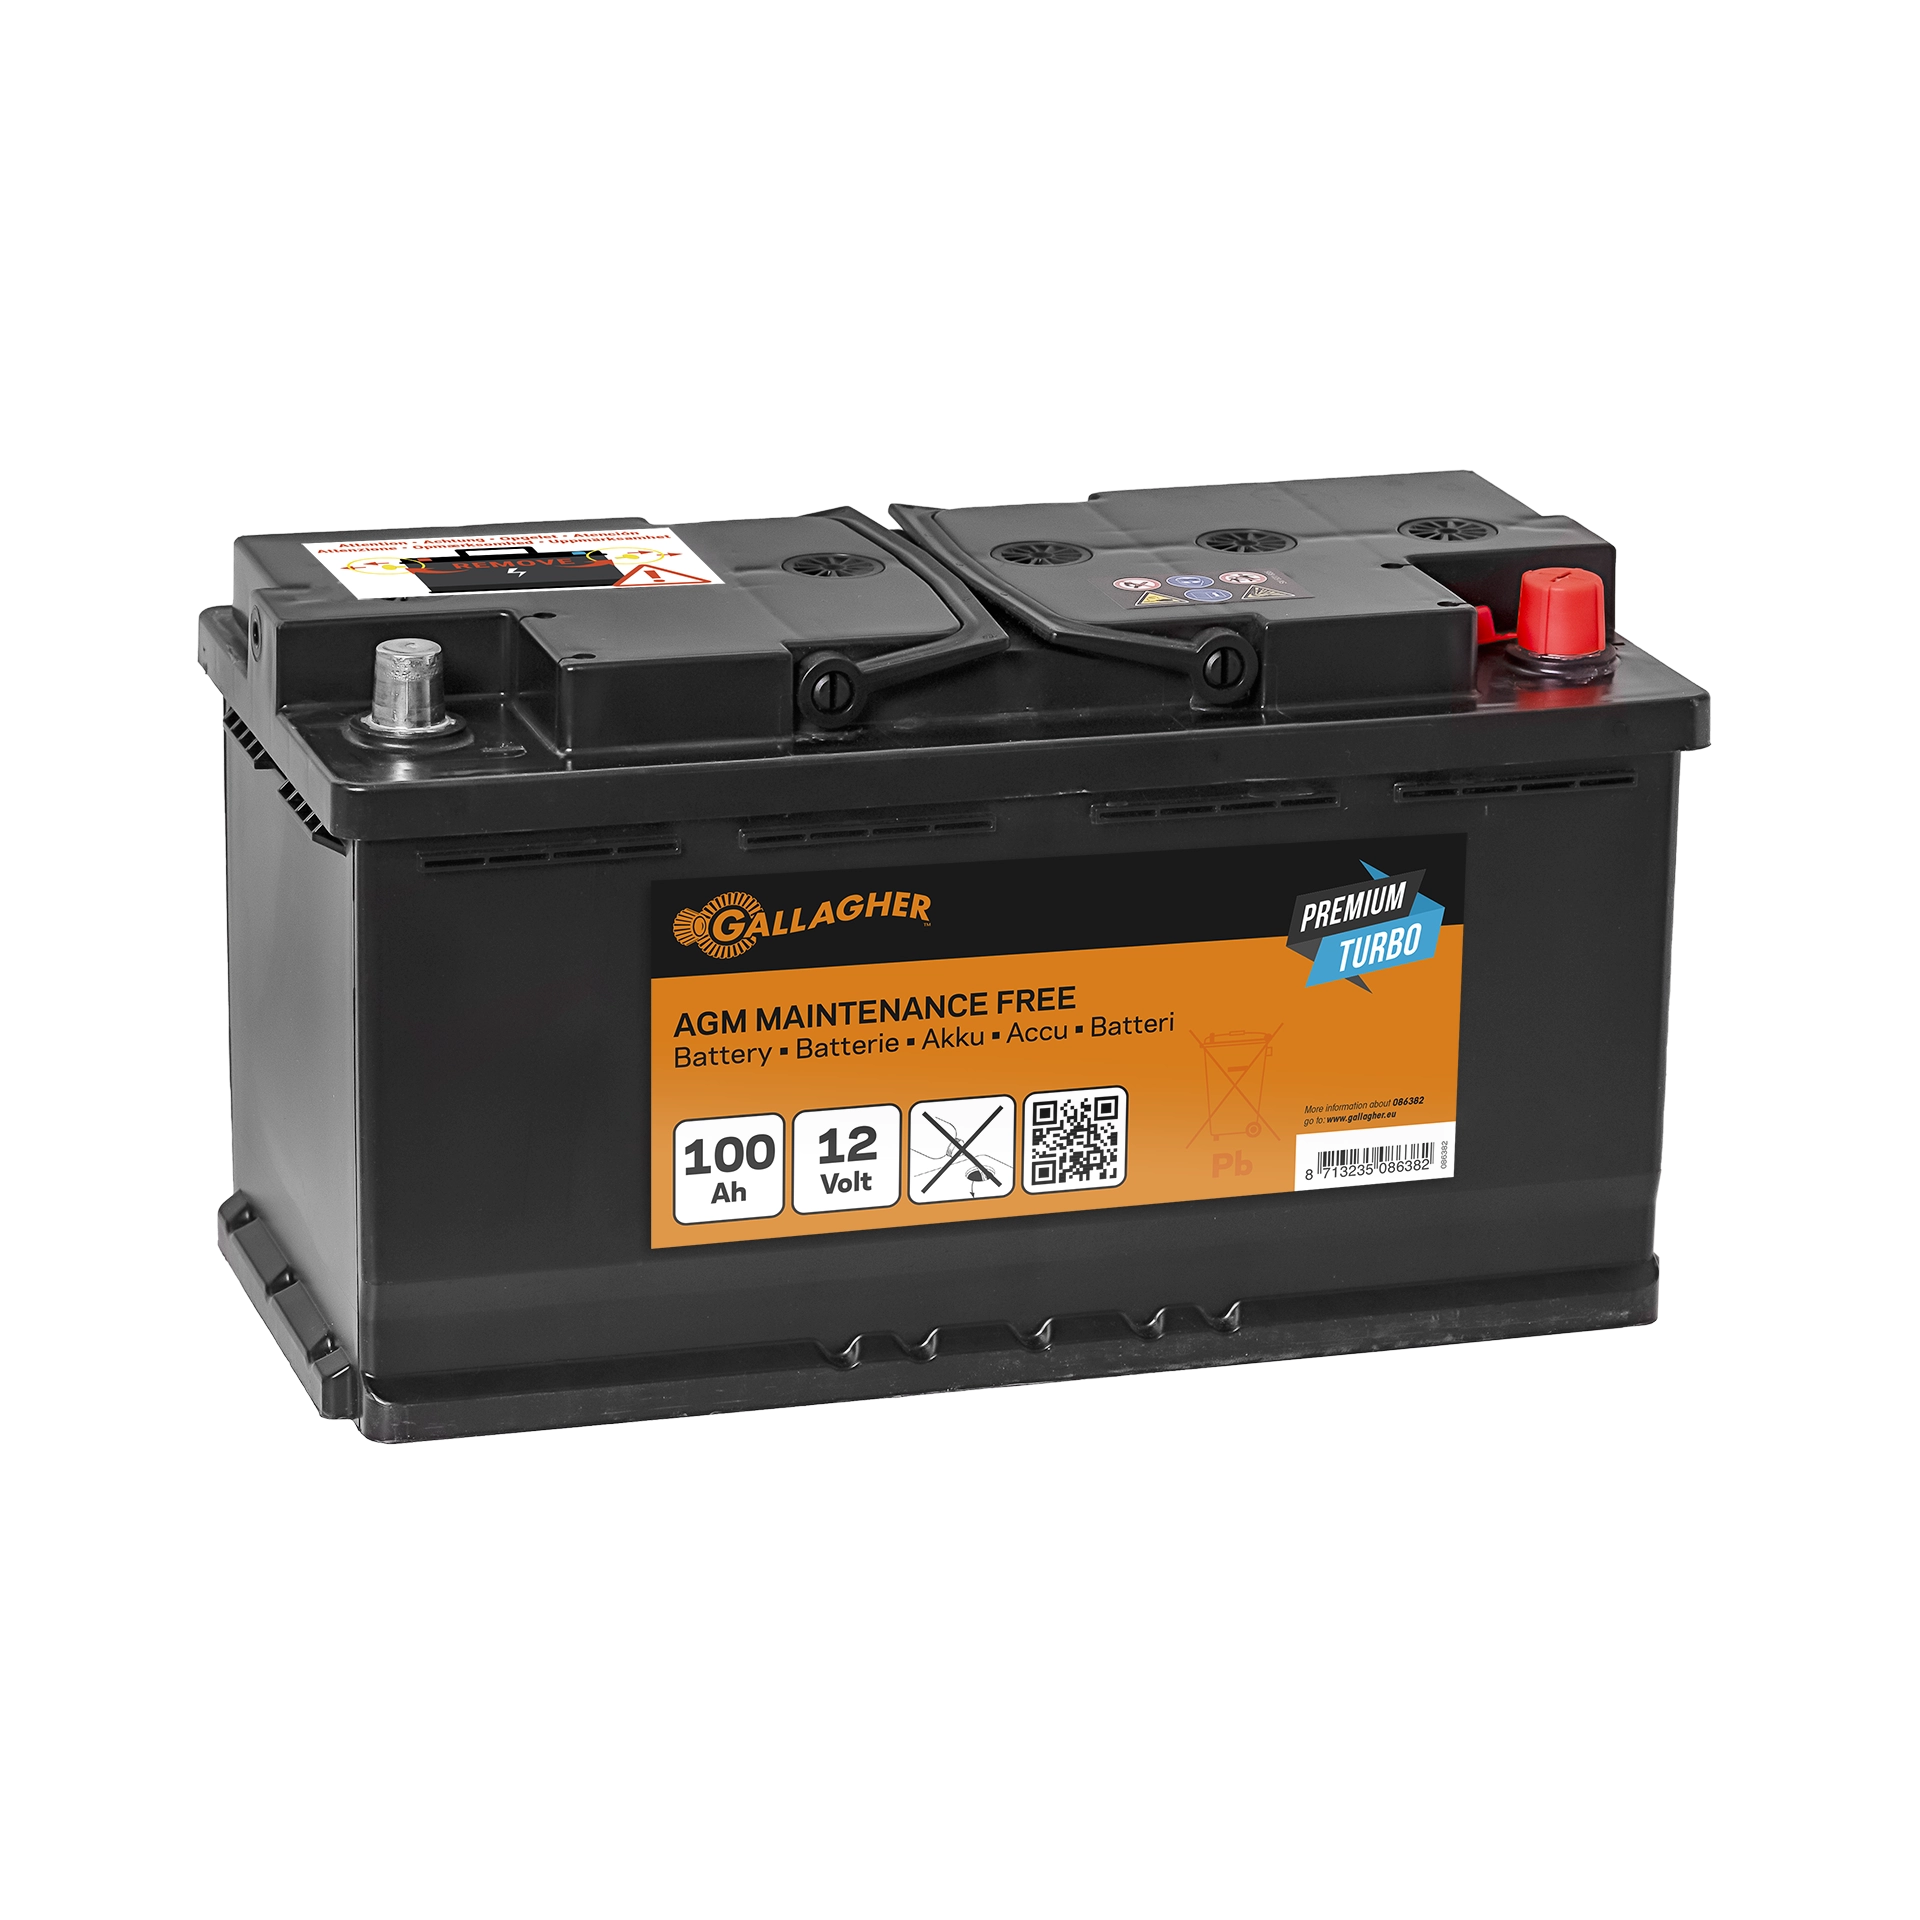 AGM-Batterie, Batterie mit geringer selbstentladung, 12V, 100Ah